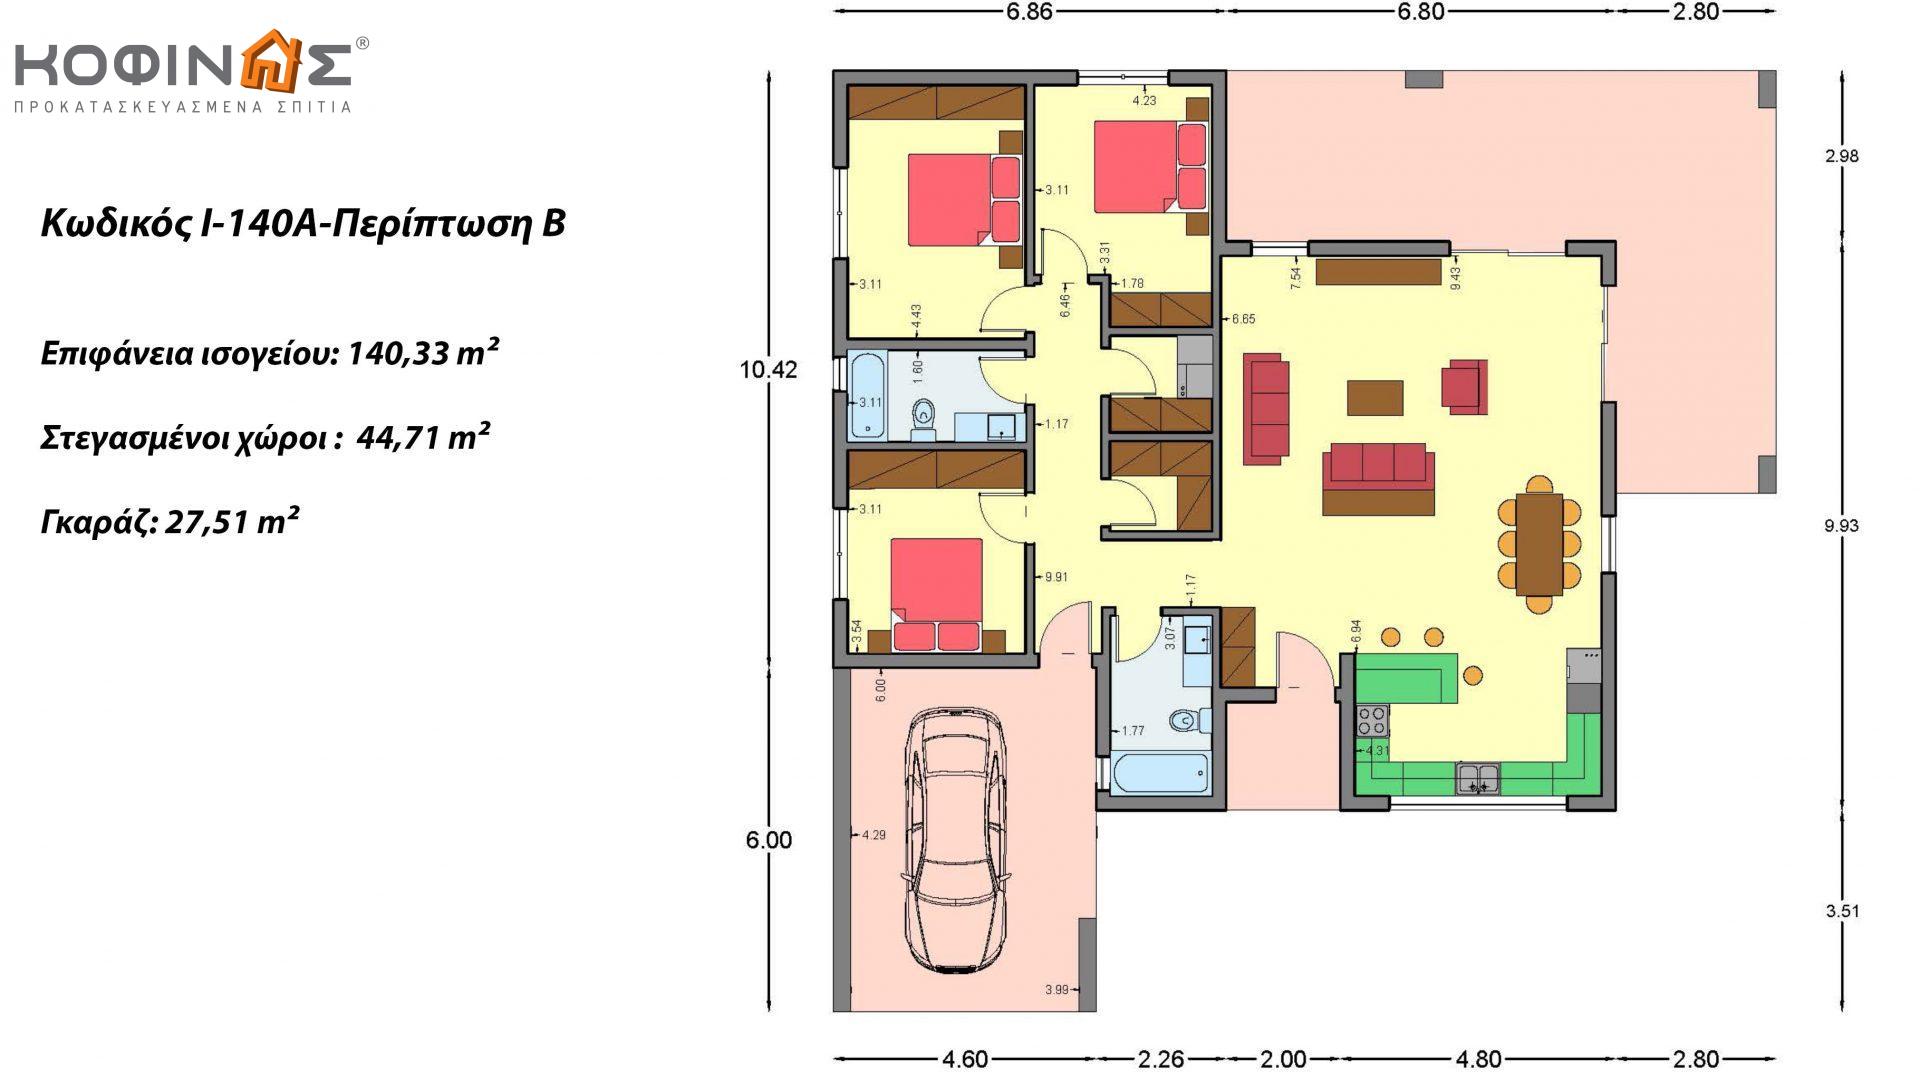 Ισόγεια Κατοικία I-140Α, συνολικής επιφάνειας 140,33 τ.μ., +Γκαράζ 27,51 m² (=167,84 m²), στεγασμένοι χώροι 45,30 τ.μ. και 44,71 τ.μ. για περίπτωση Β